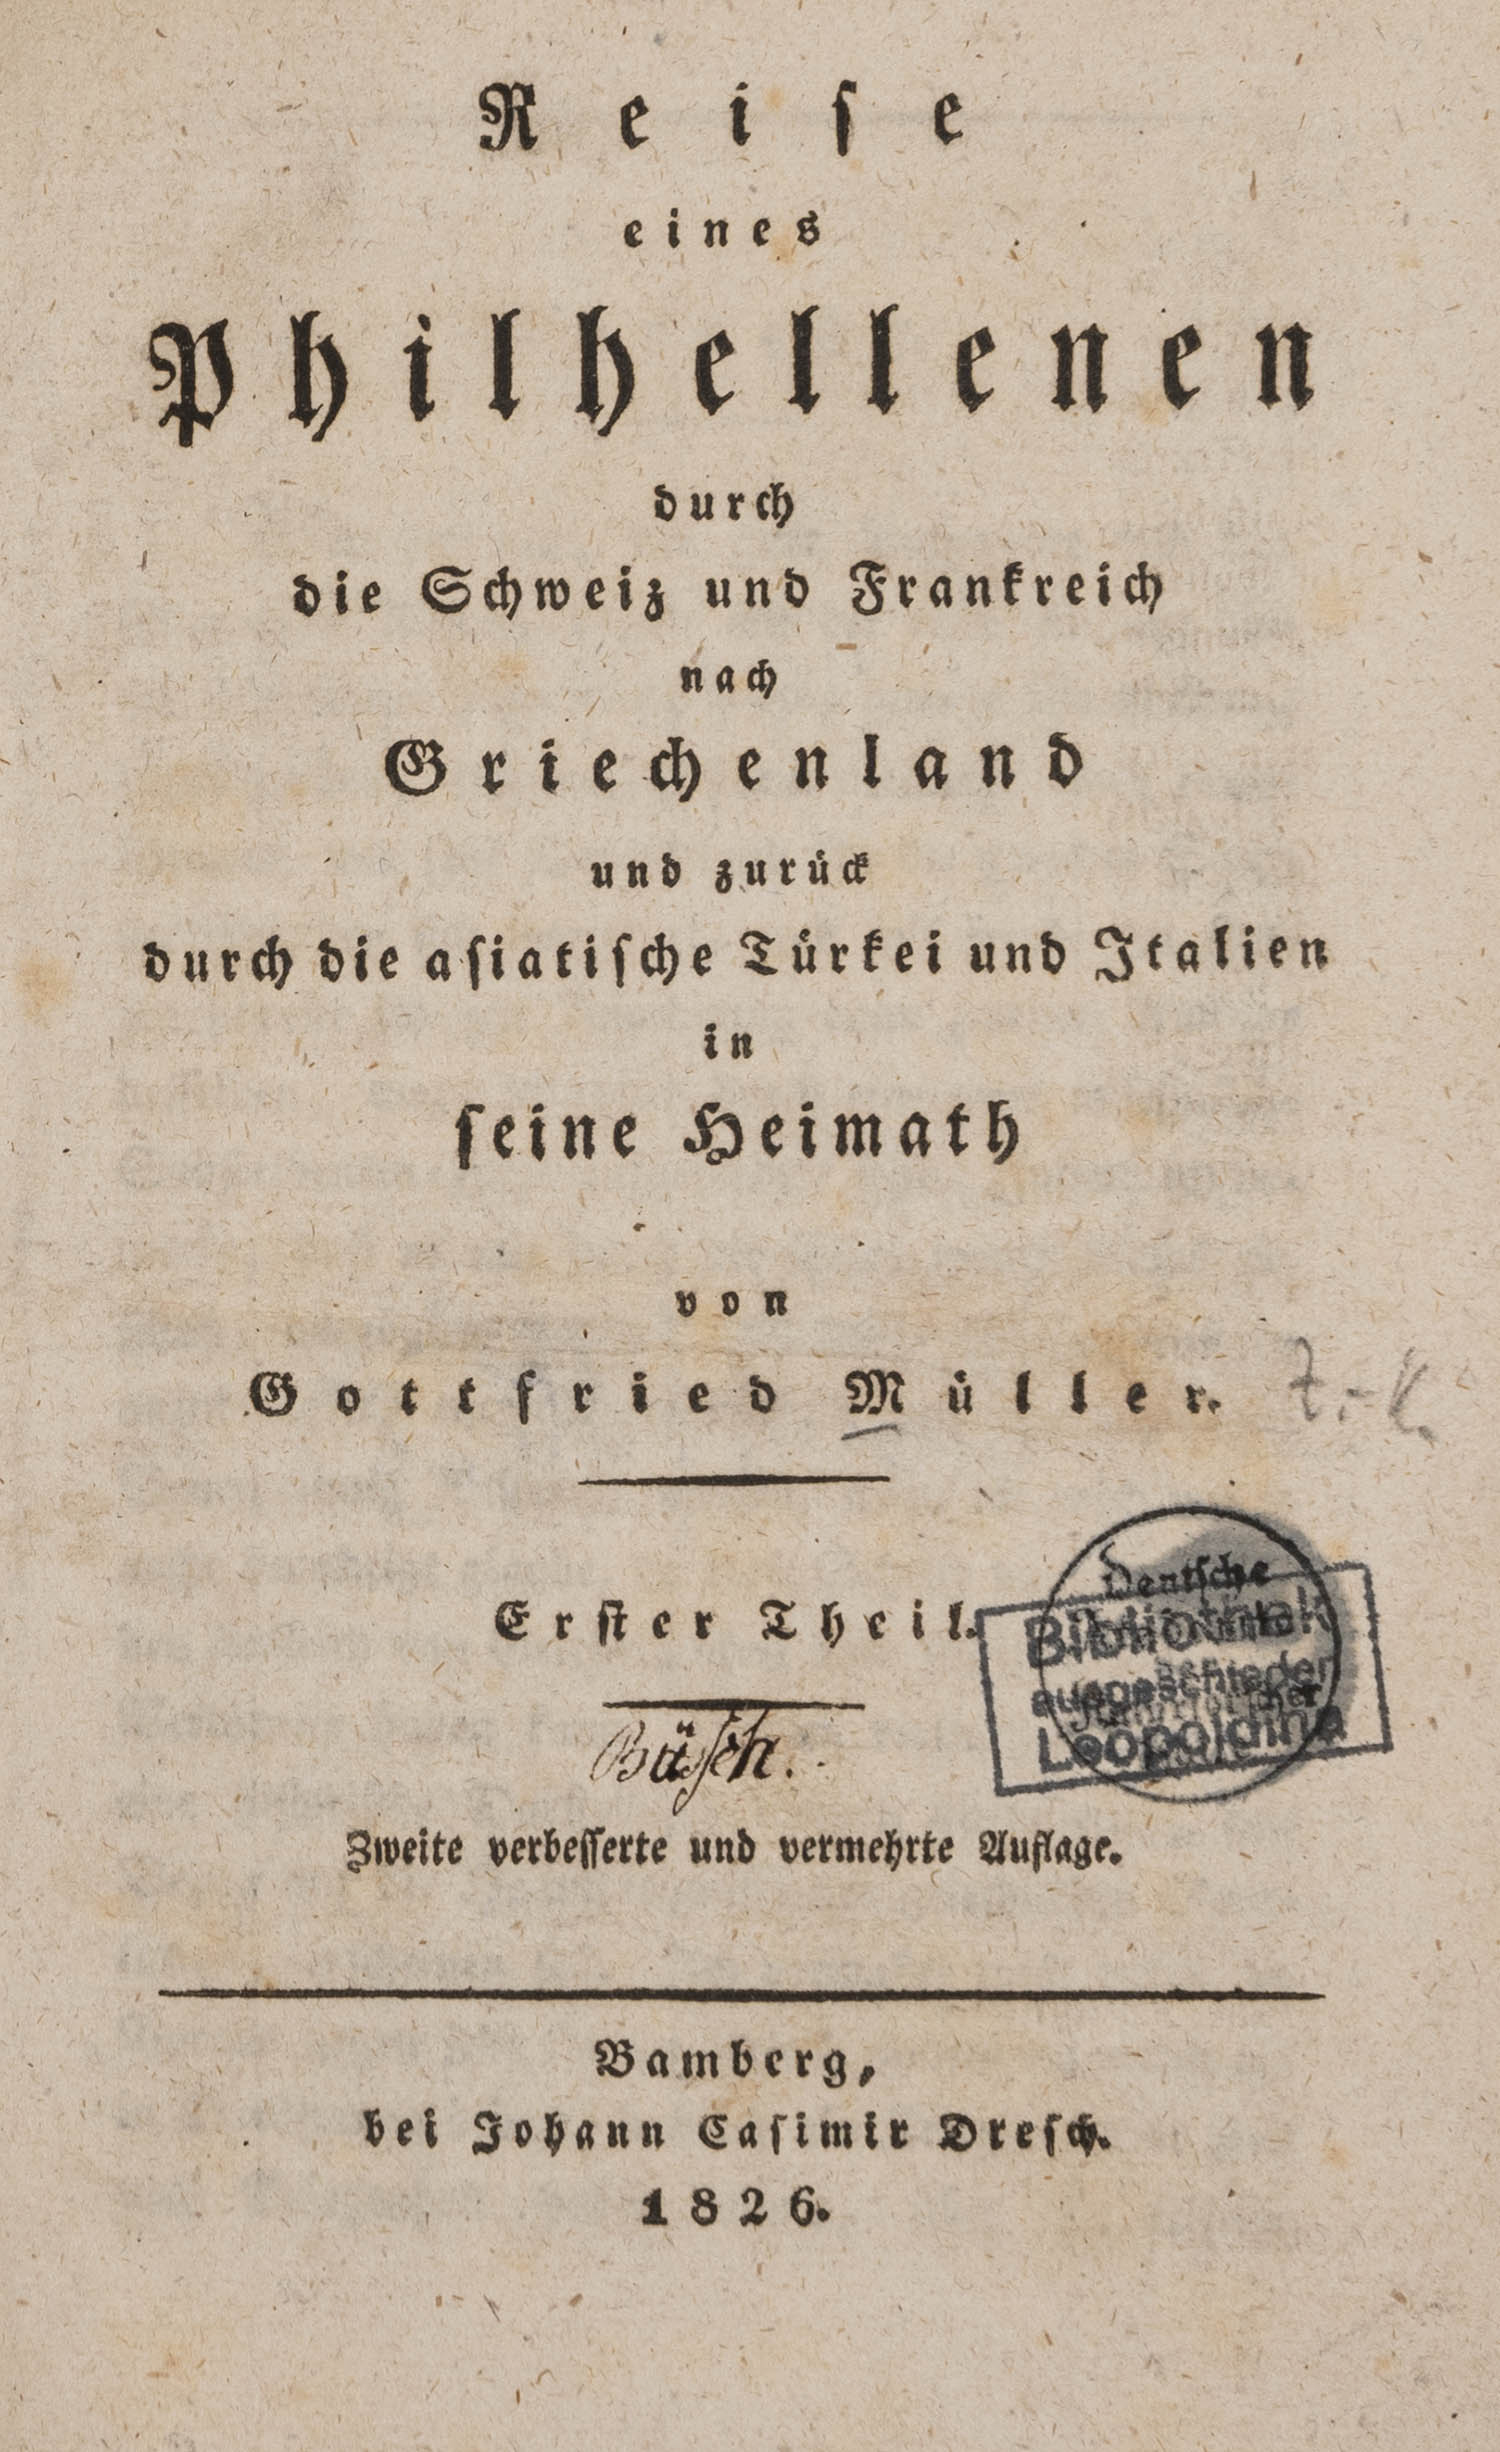 MÜLLER, Gottfried.